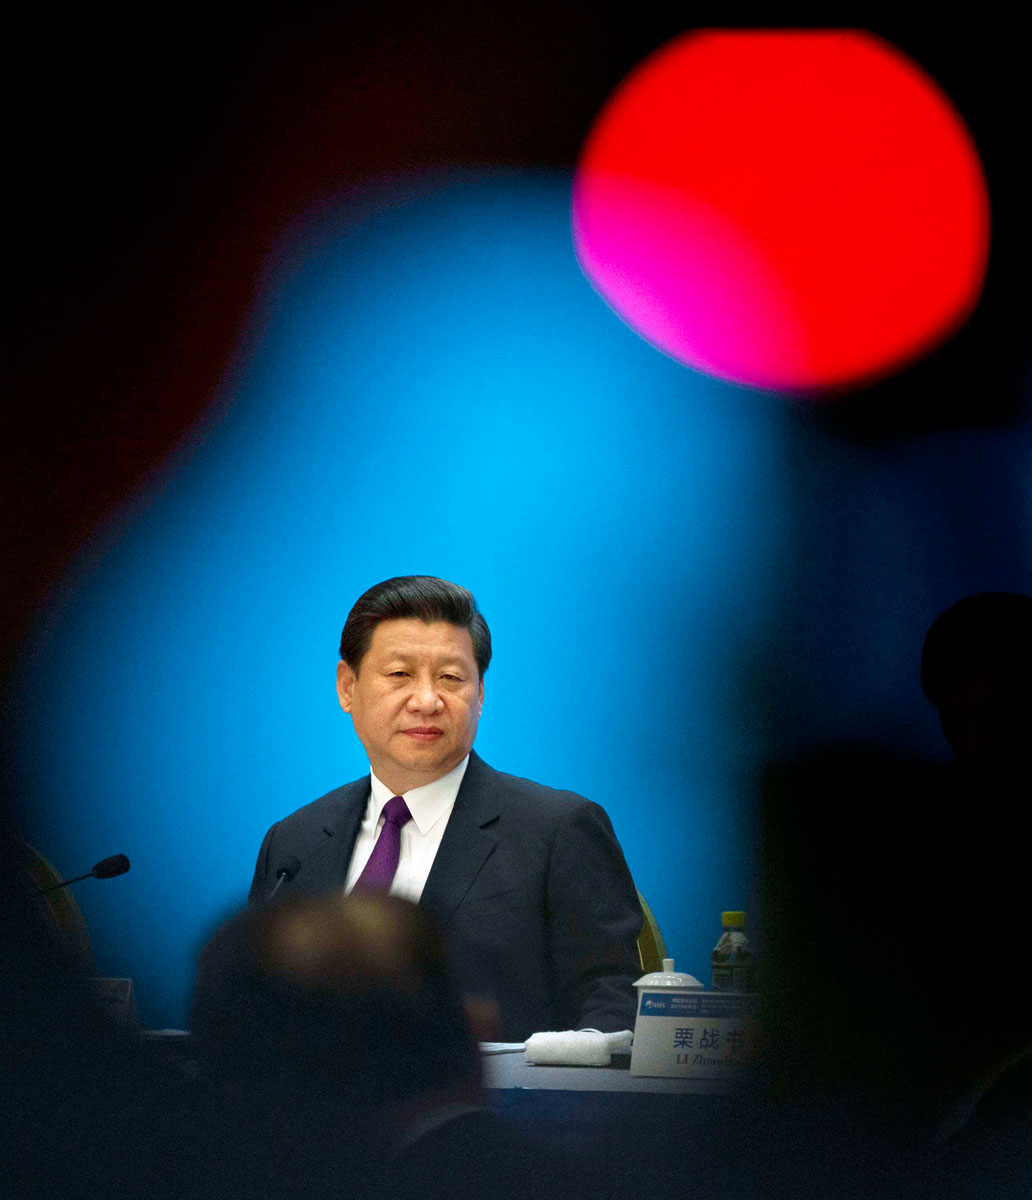 Xi Jinping kínai elnök tévékamerák fényében egy gazdasági fórum megnyitóján. Tabukat döntöget